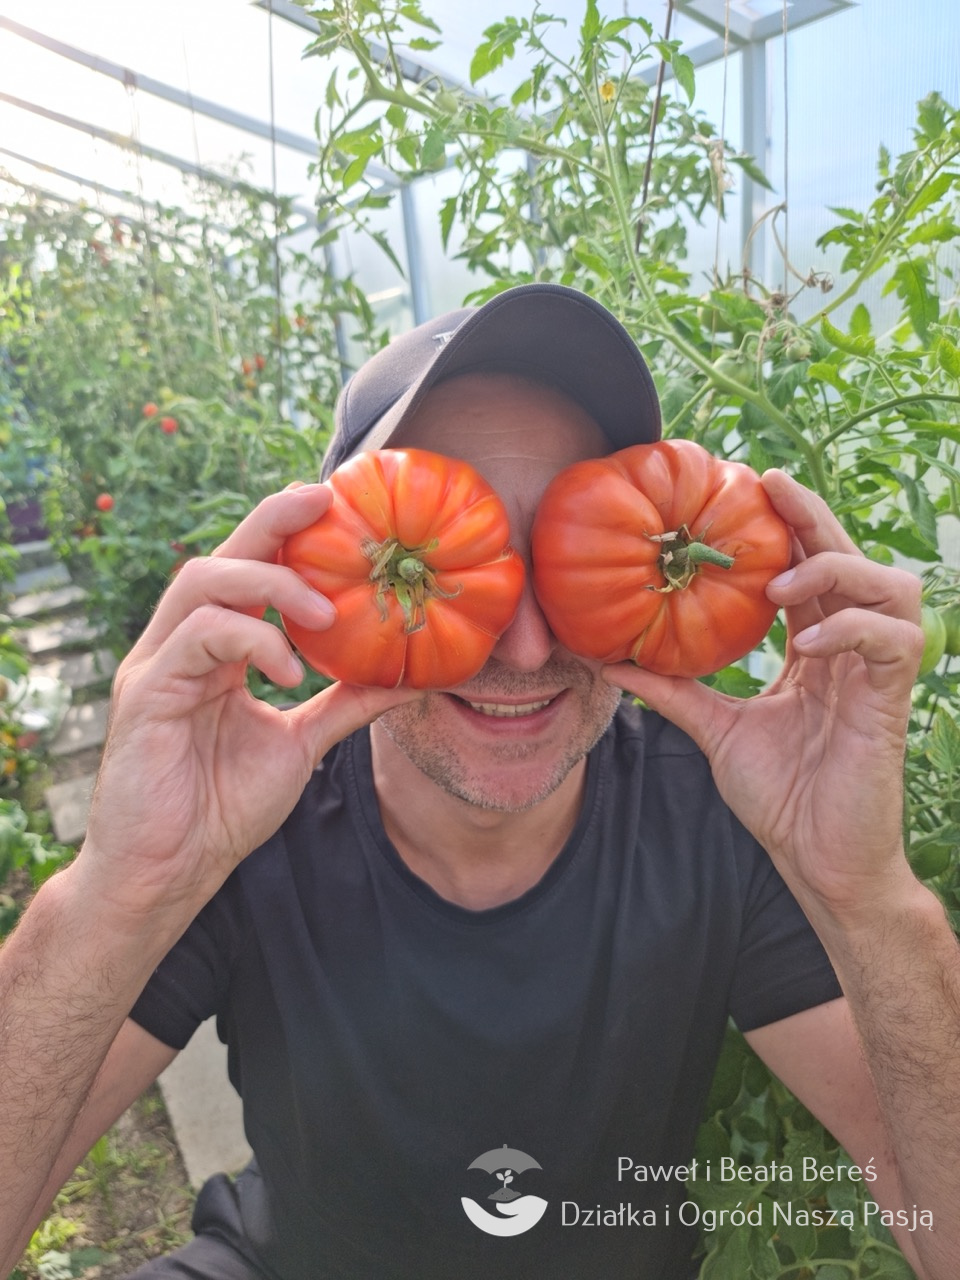 Pomidor odmiany Sumo – duże, czerwone owoce o masie do 1 kg